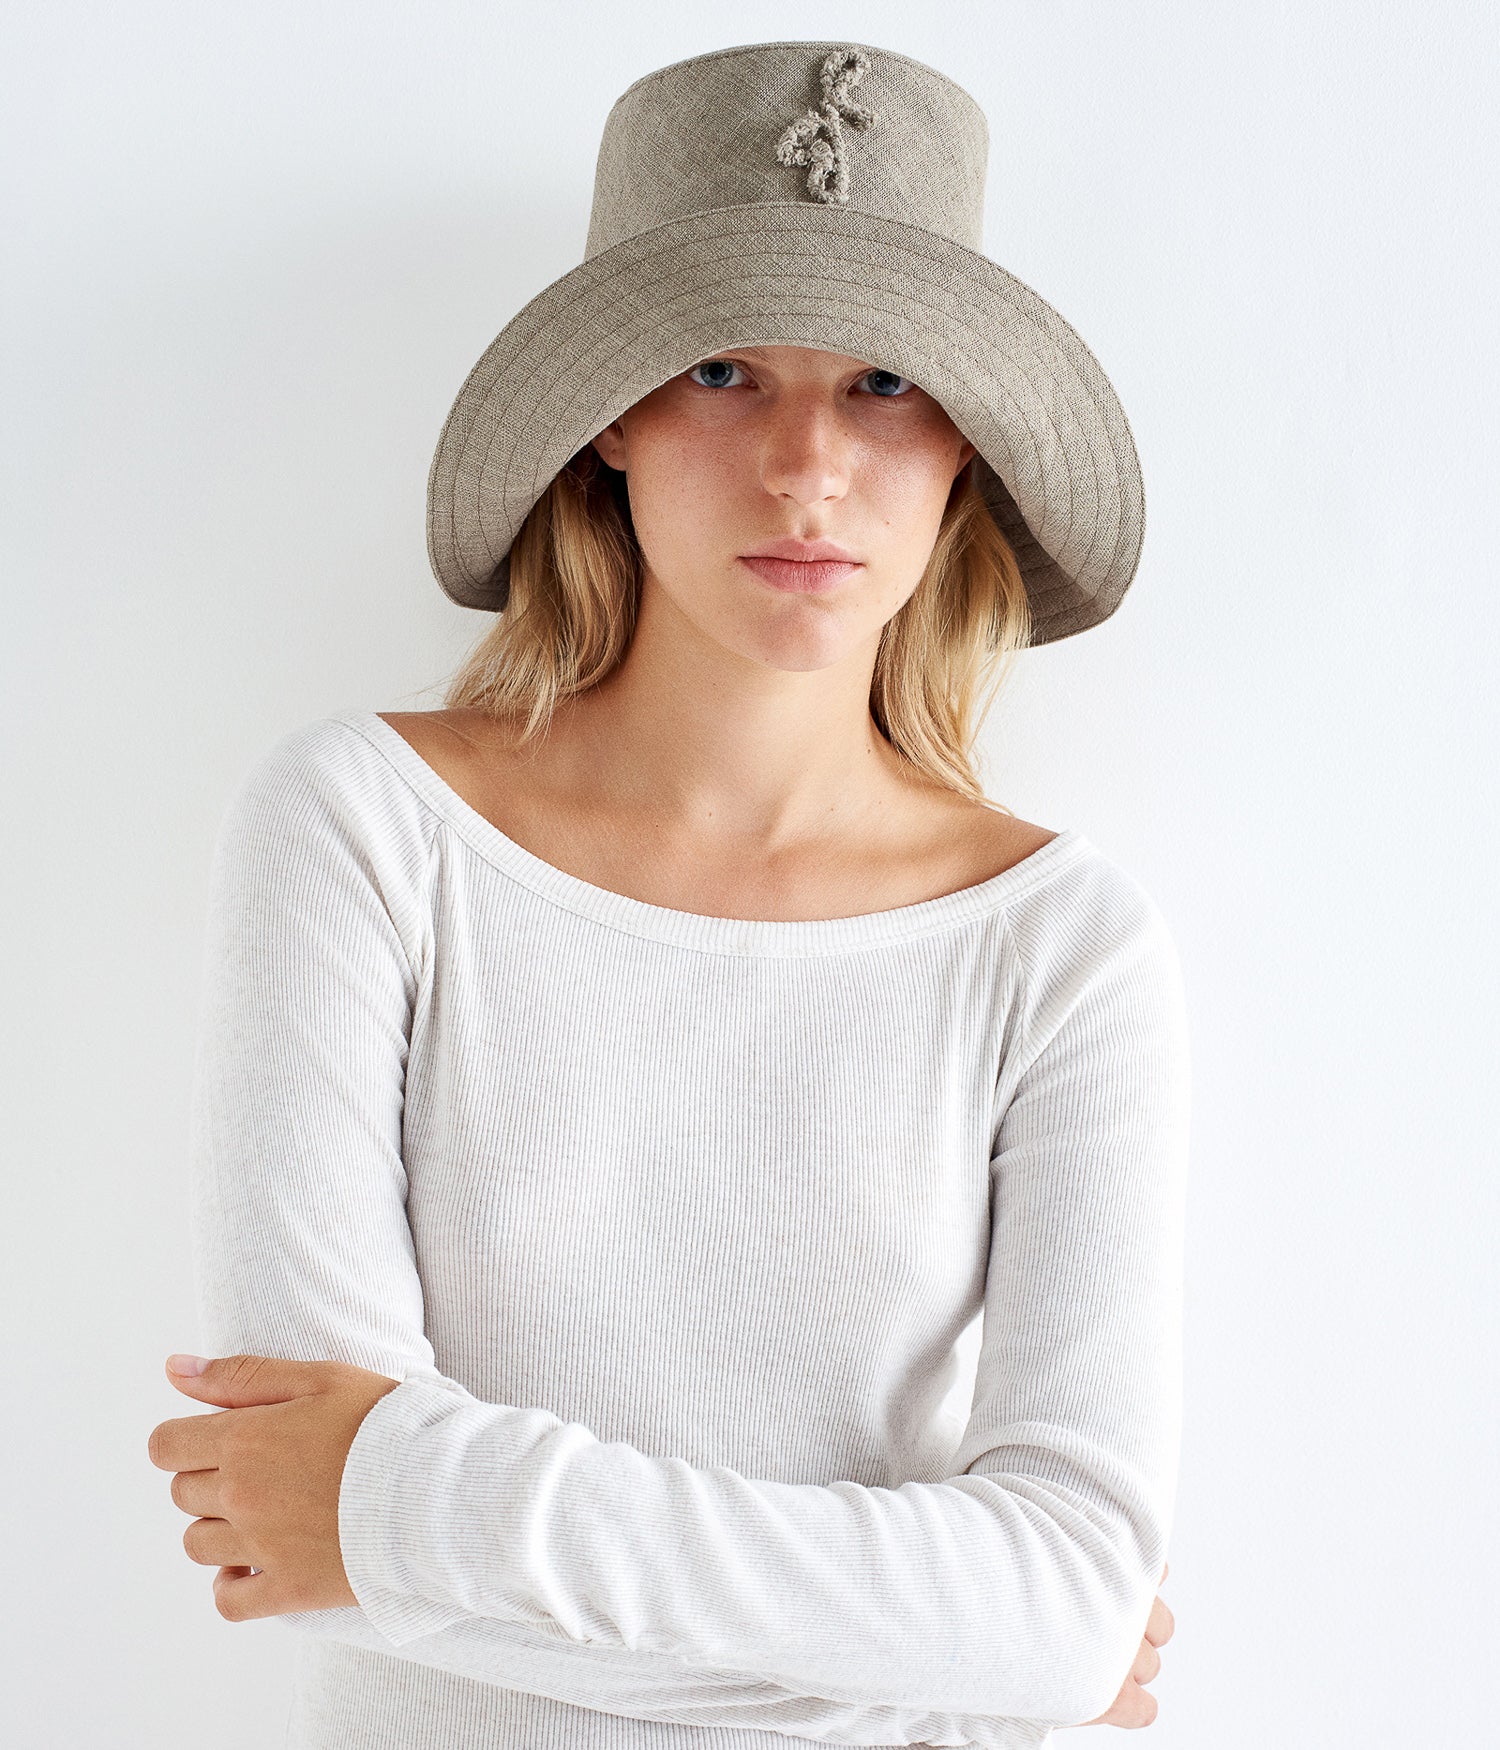 Monogram-Embelished Wide-Brimmed Linen Hat